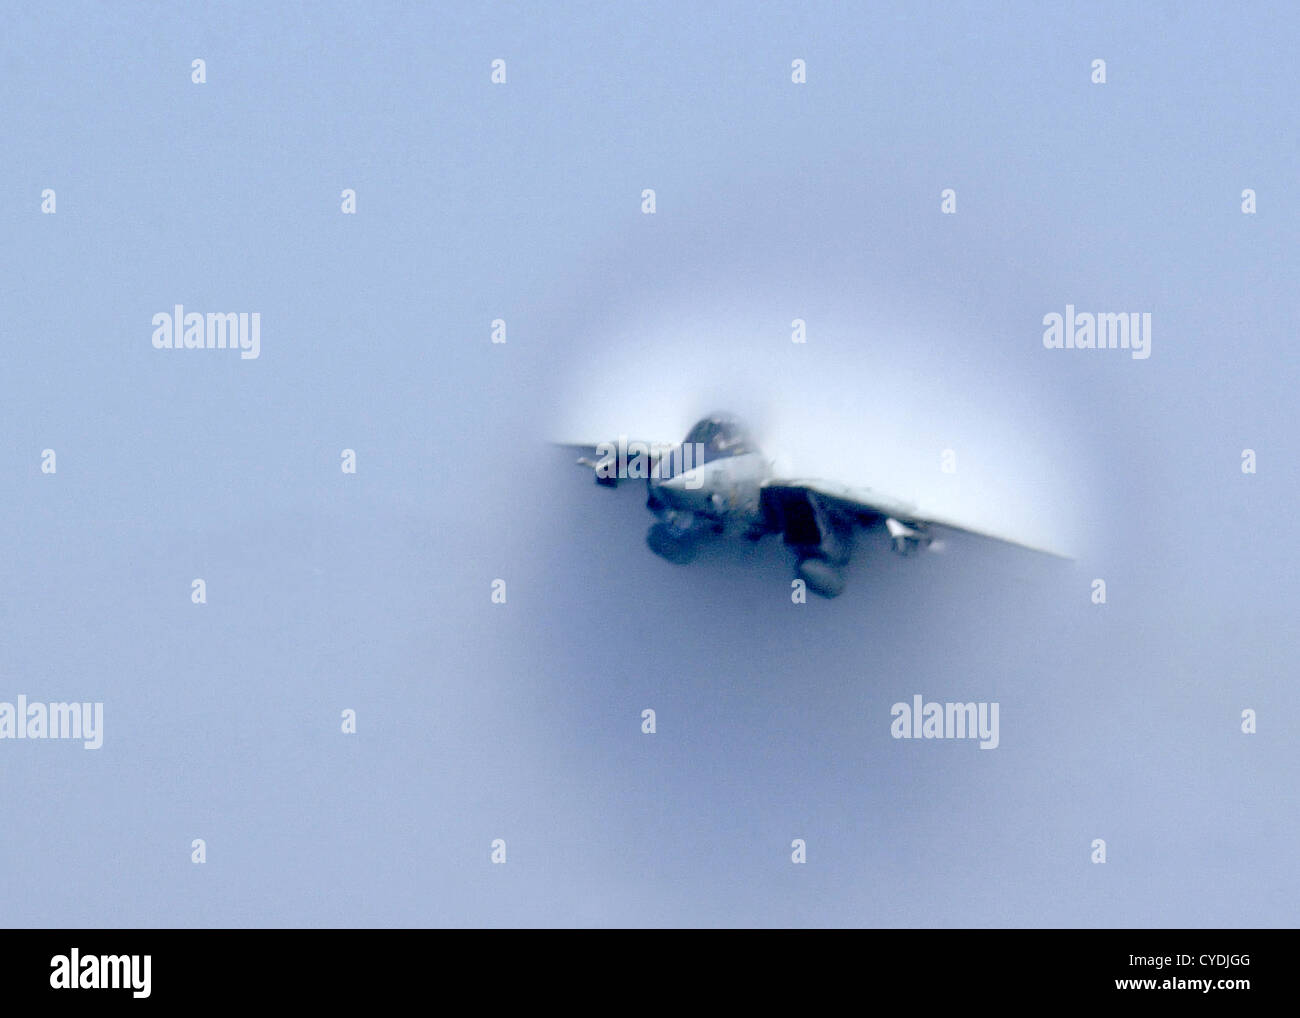 Eine F-14 Tomcat Kampfjet erreicht die Schallmauer in niedriger Höhe, super sonic Fly-by-22. April 2003 während einer Flugvorführung des Luft-Flügel für die Crew an Bord der USS Harry S. Truman. Stockfoto